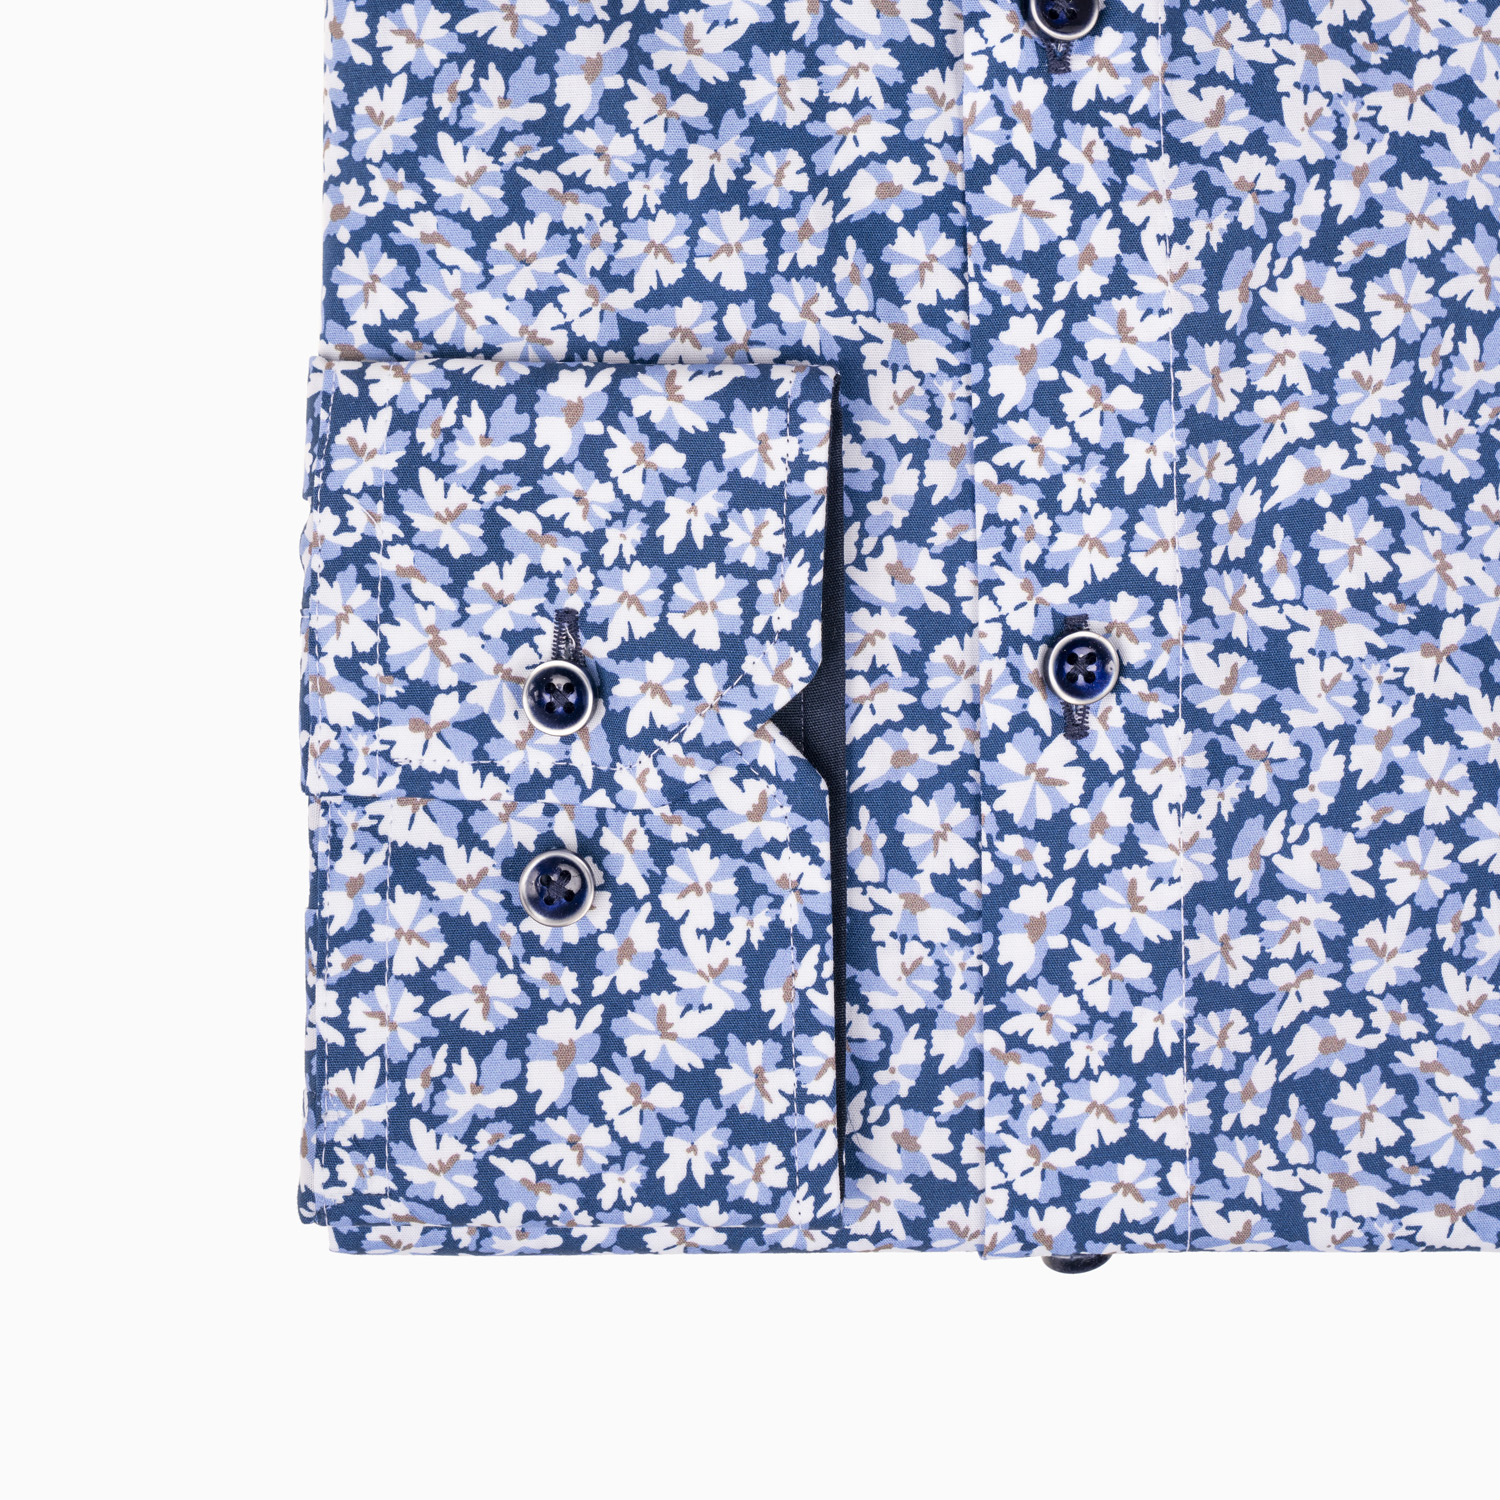 Freizeit Hemd Blau mit floralem Print - Slim Fit